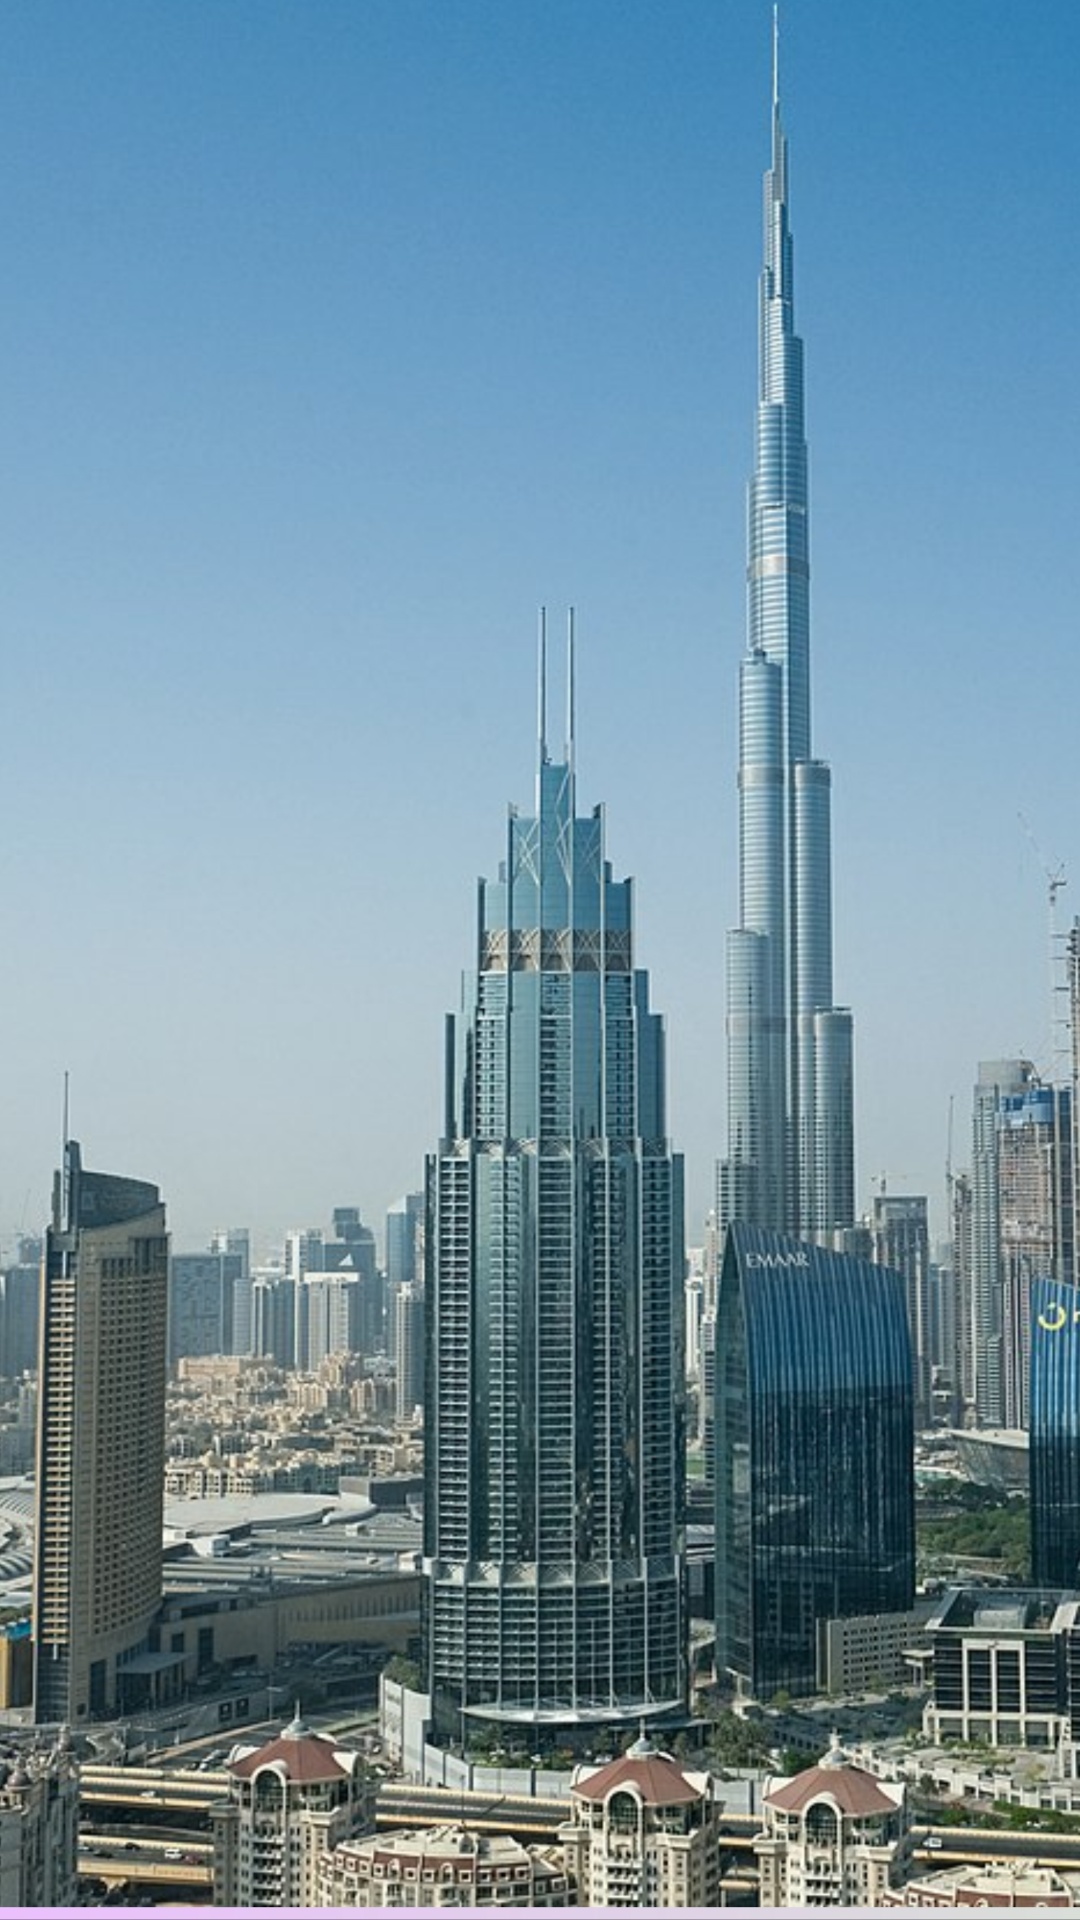 दुबई में ठहरने के लिए अच्छा विकल्प कौन सा है?